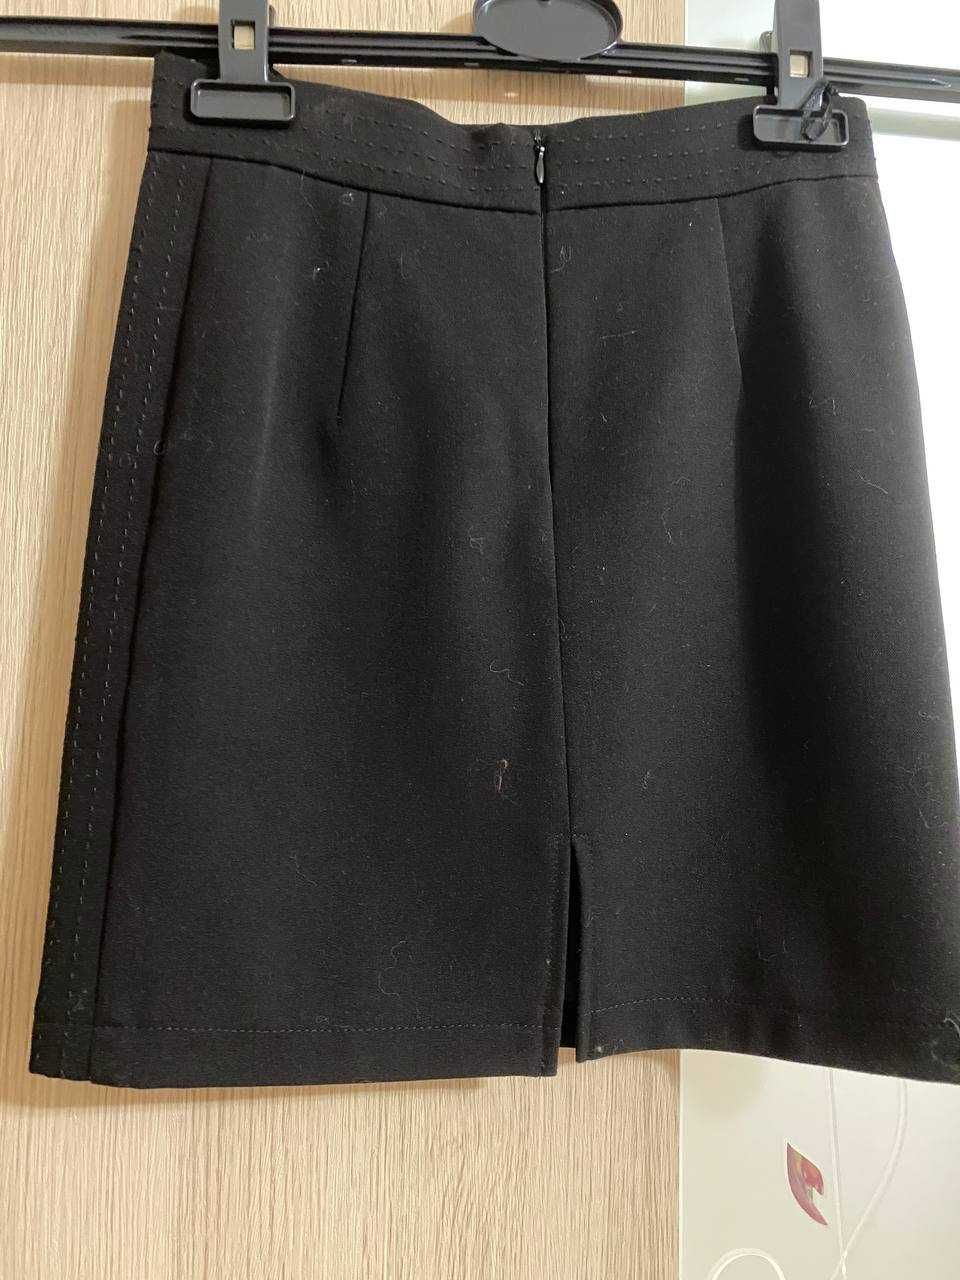 Школьная форма, юбка для девочки размер 122